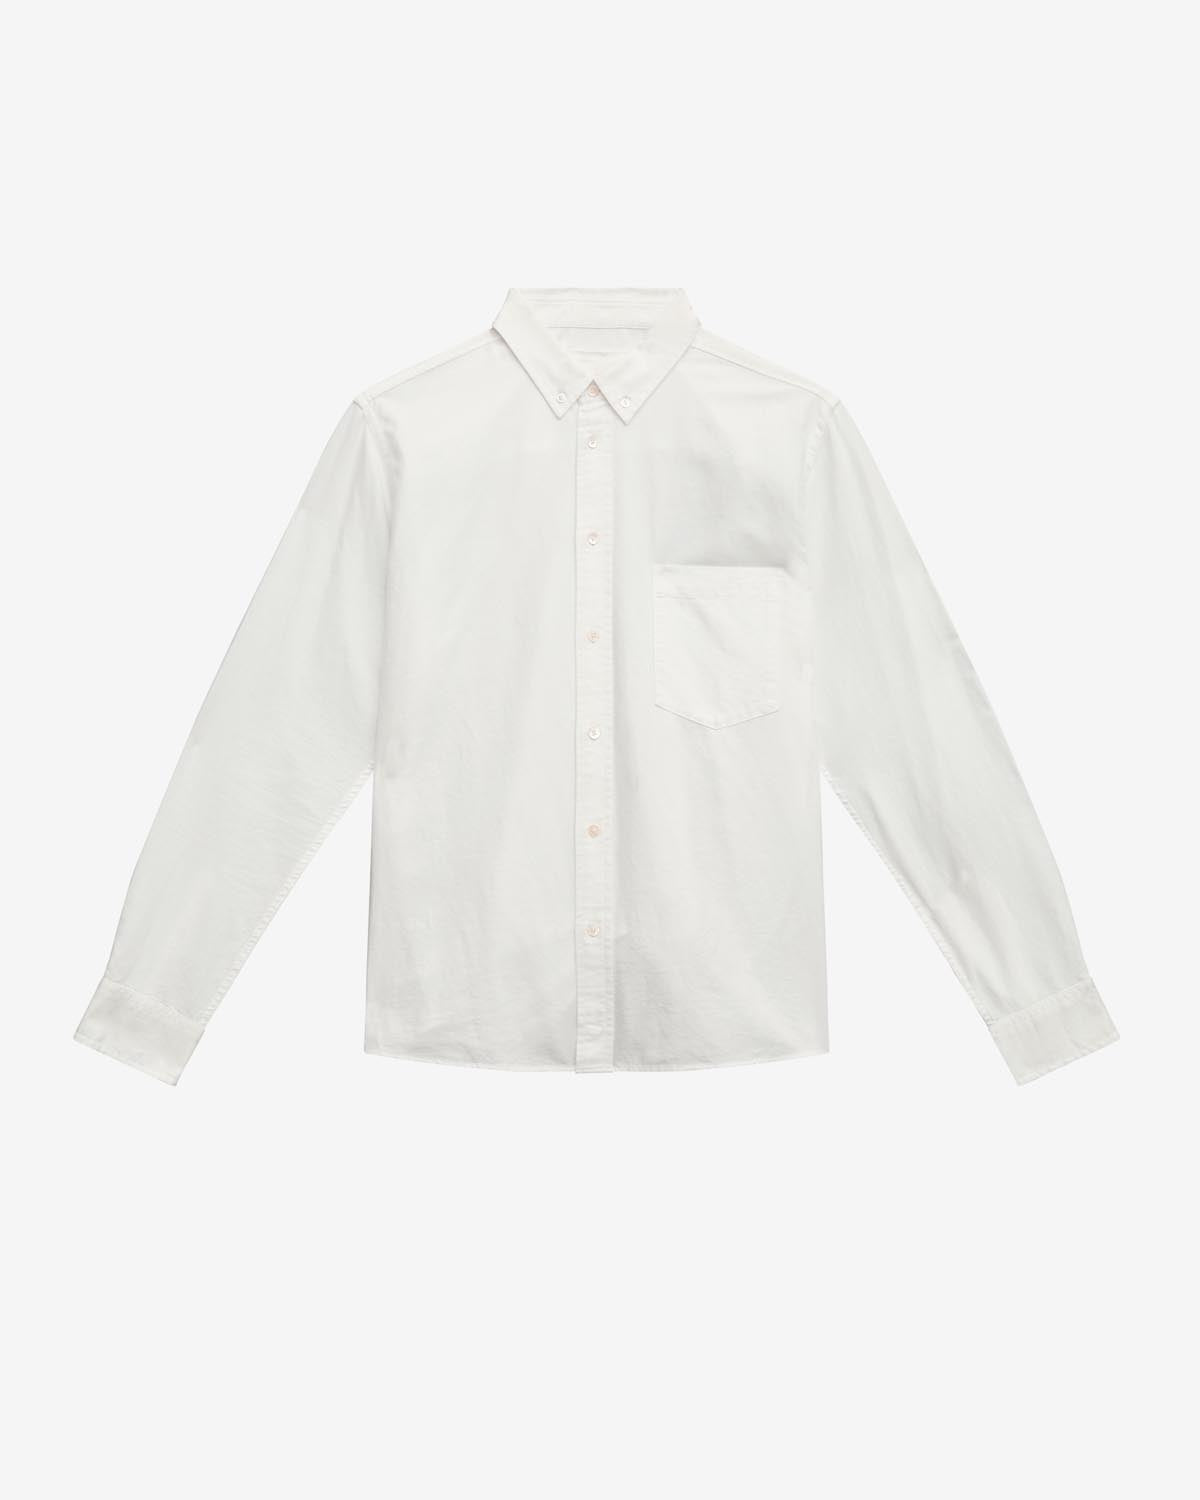 Jasolo 셔츠 Man 하얀색 1